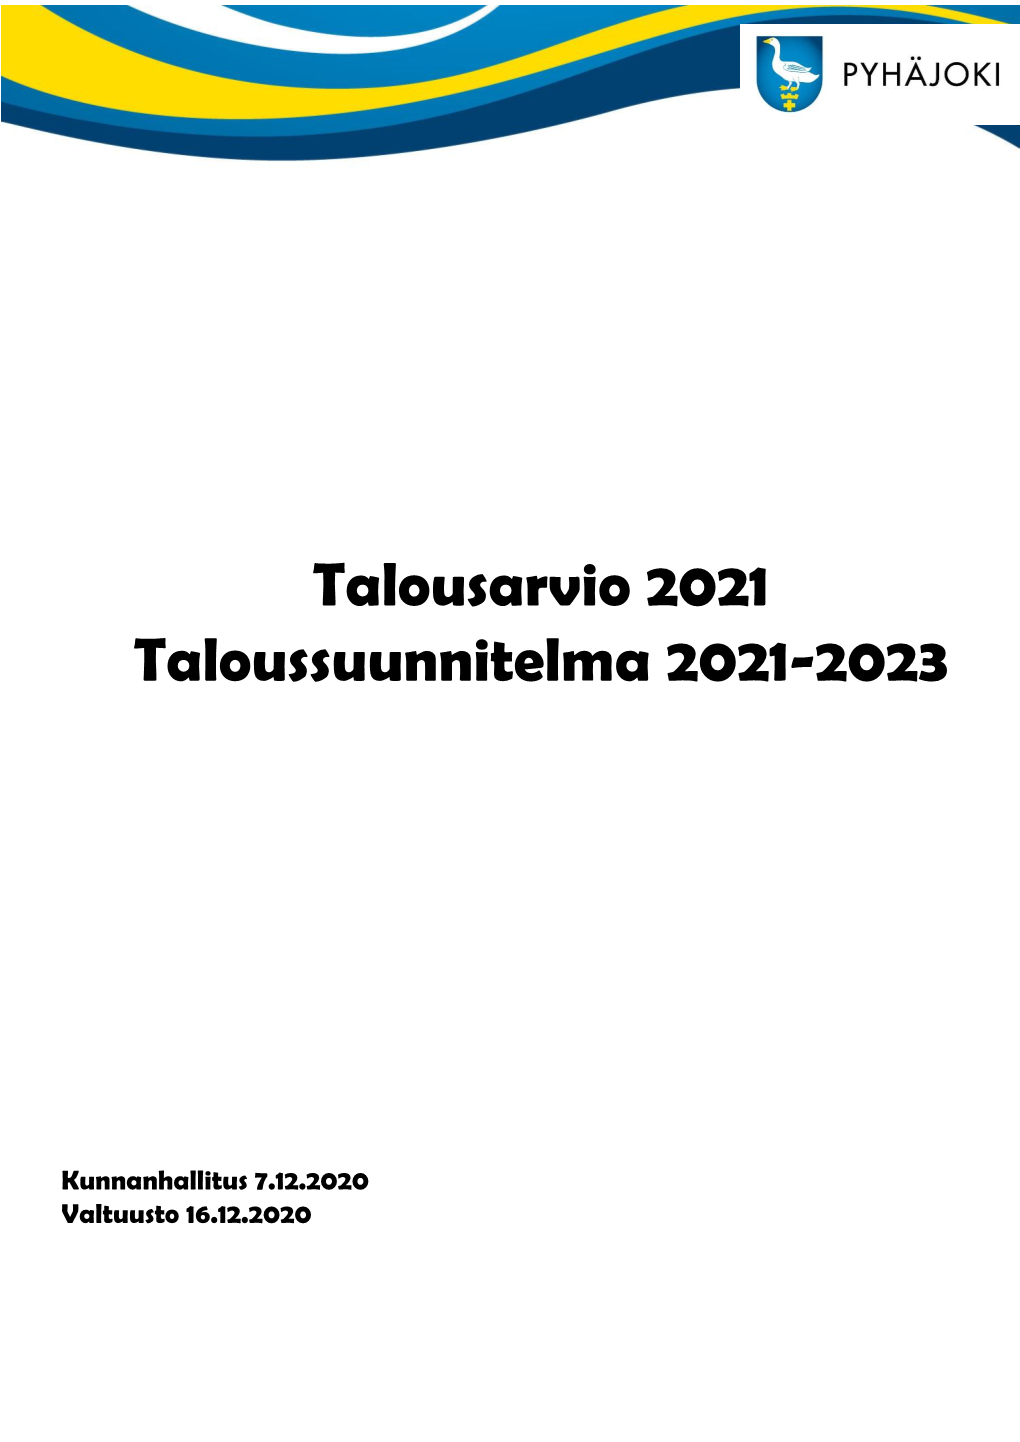 Talousarvio 2021 Taloussuunnitelma 2021-2023